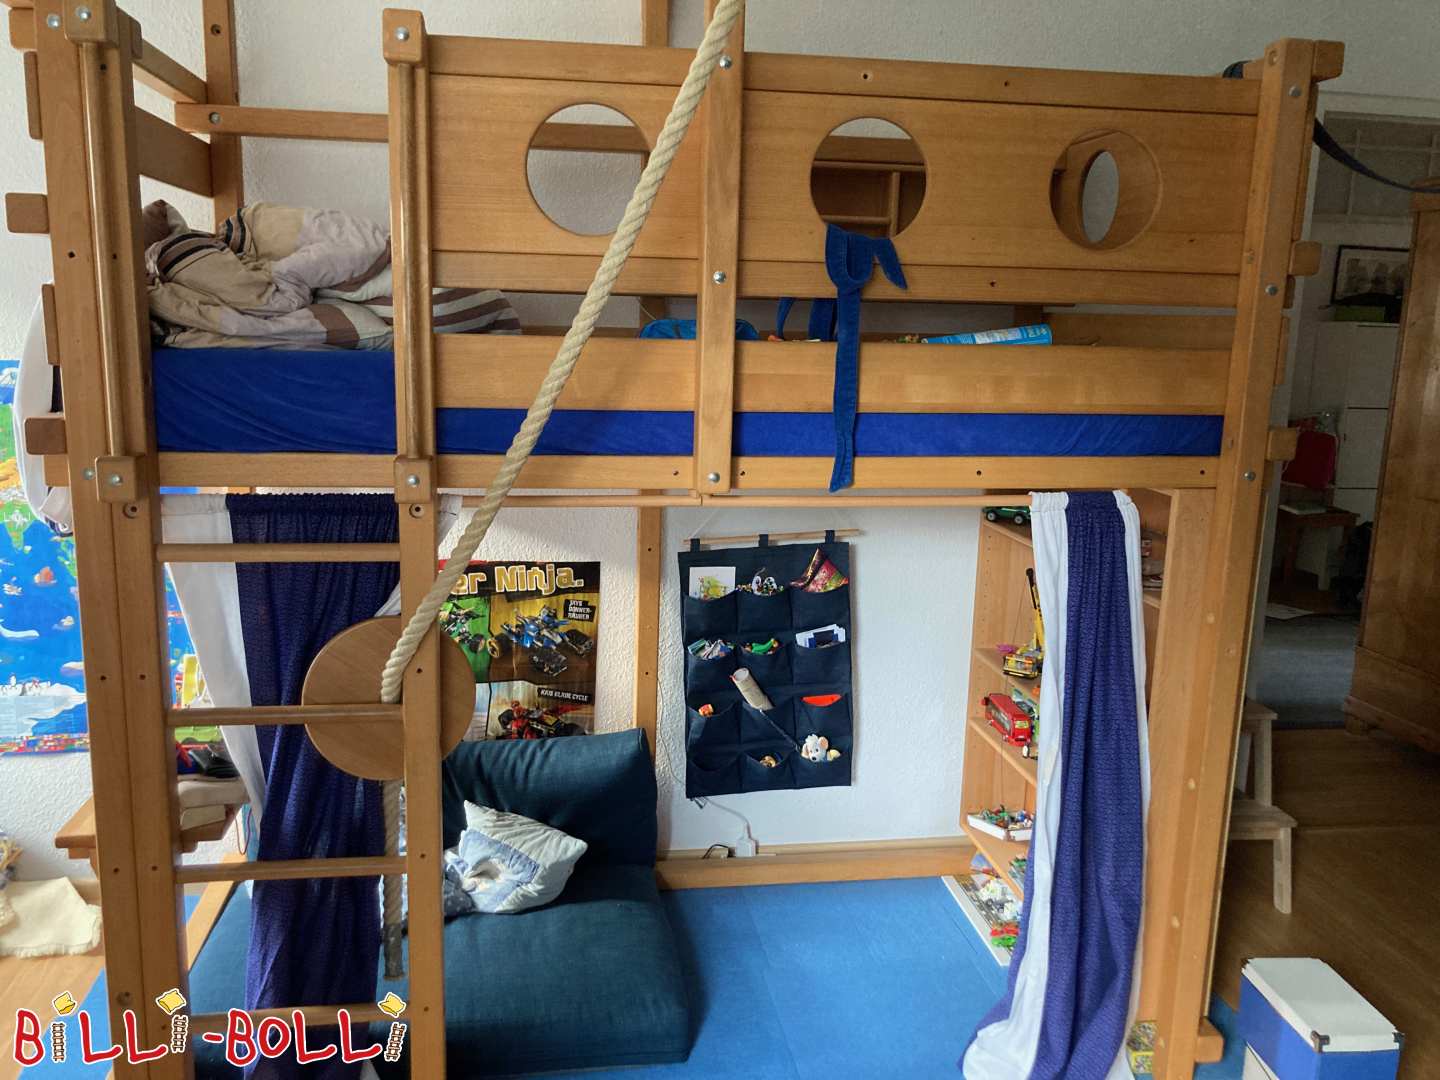 Palėpės lova, auganti su vaiku, 90x200, buko, su daugybe priedų, puikios būklės (Kategorija: Palėpės lova auga kartu su vaiku used)